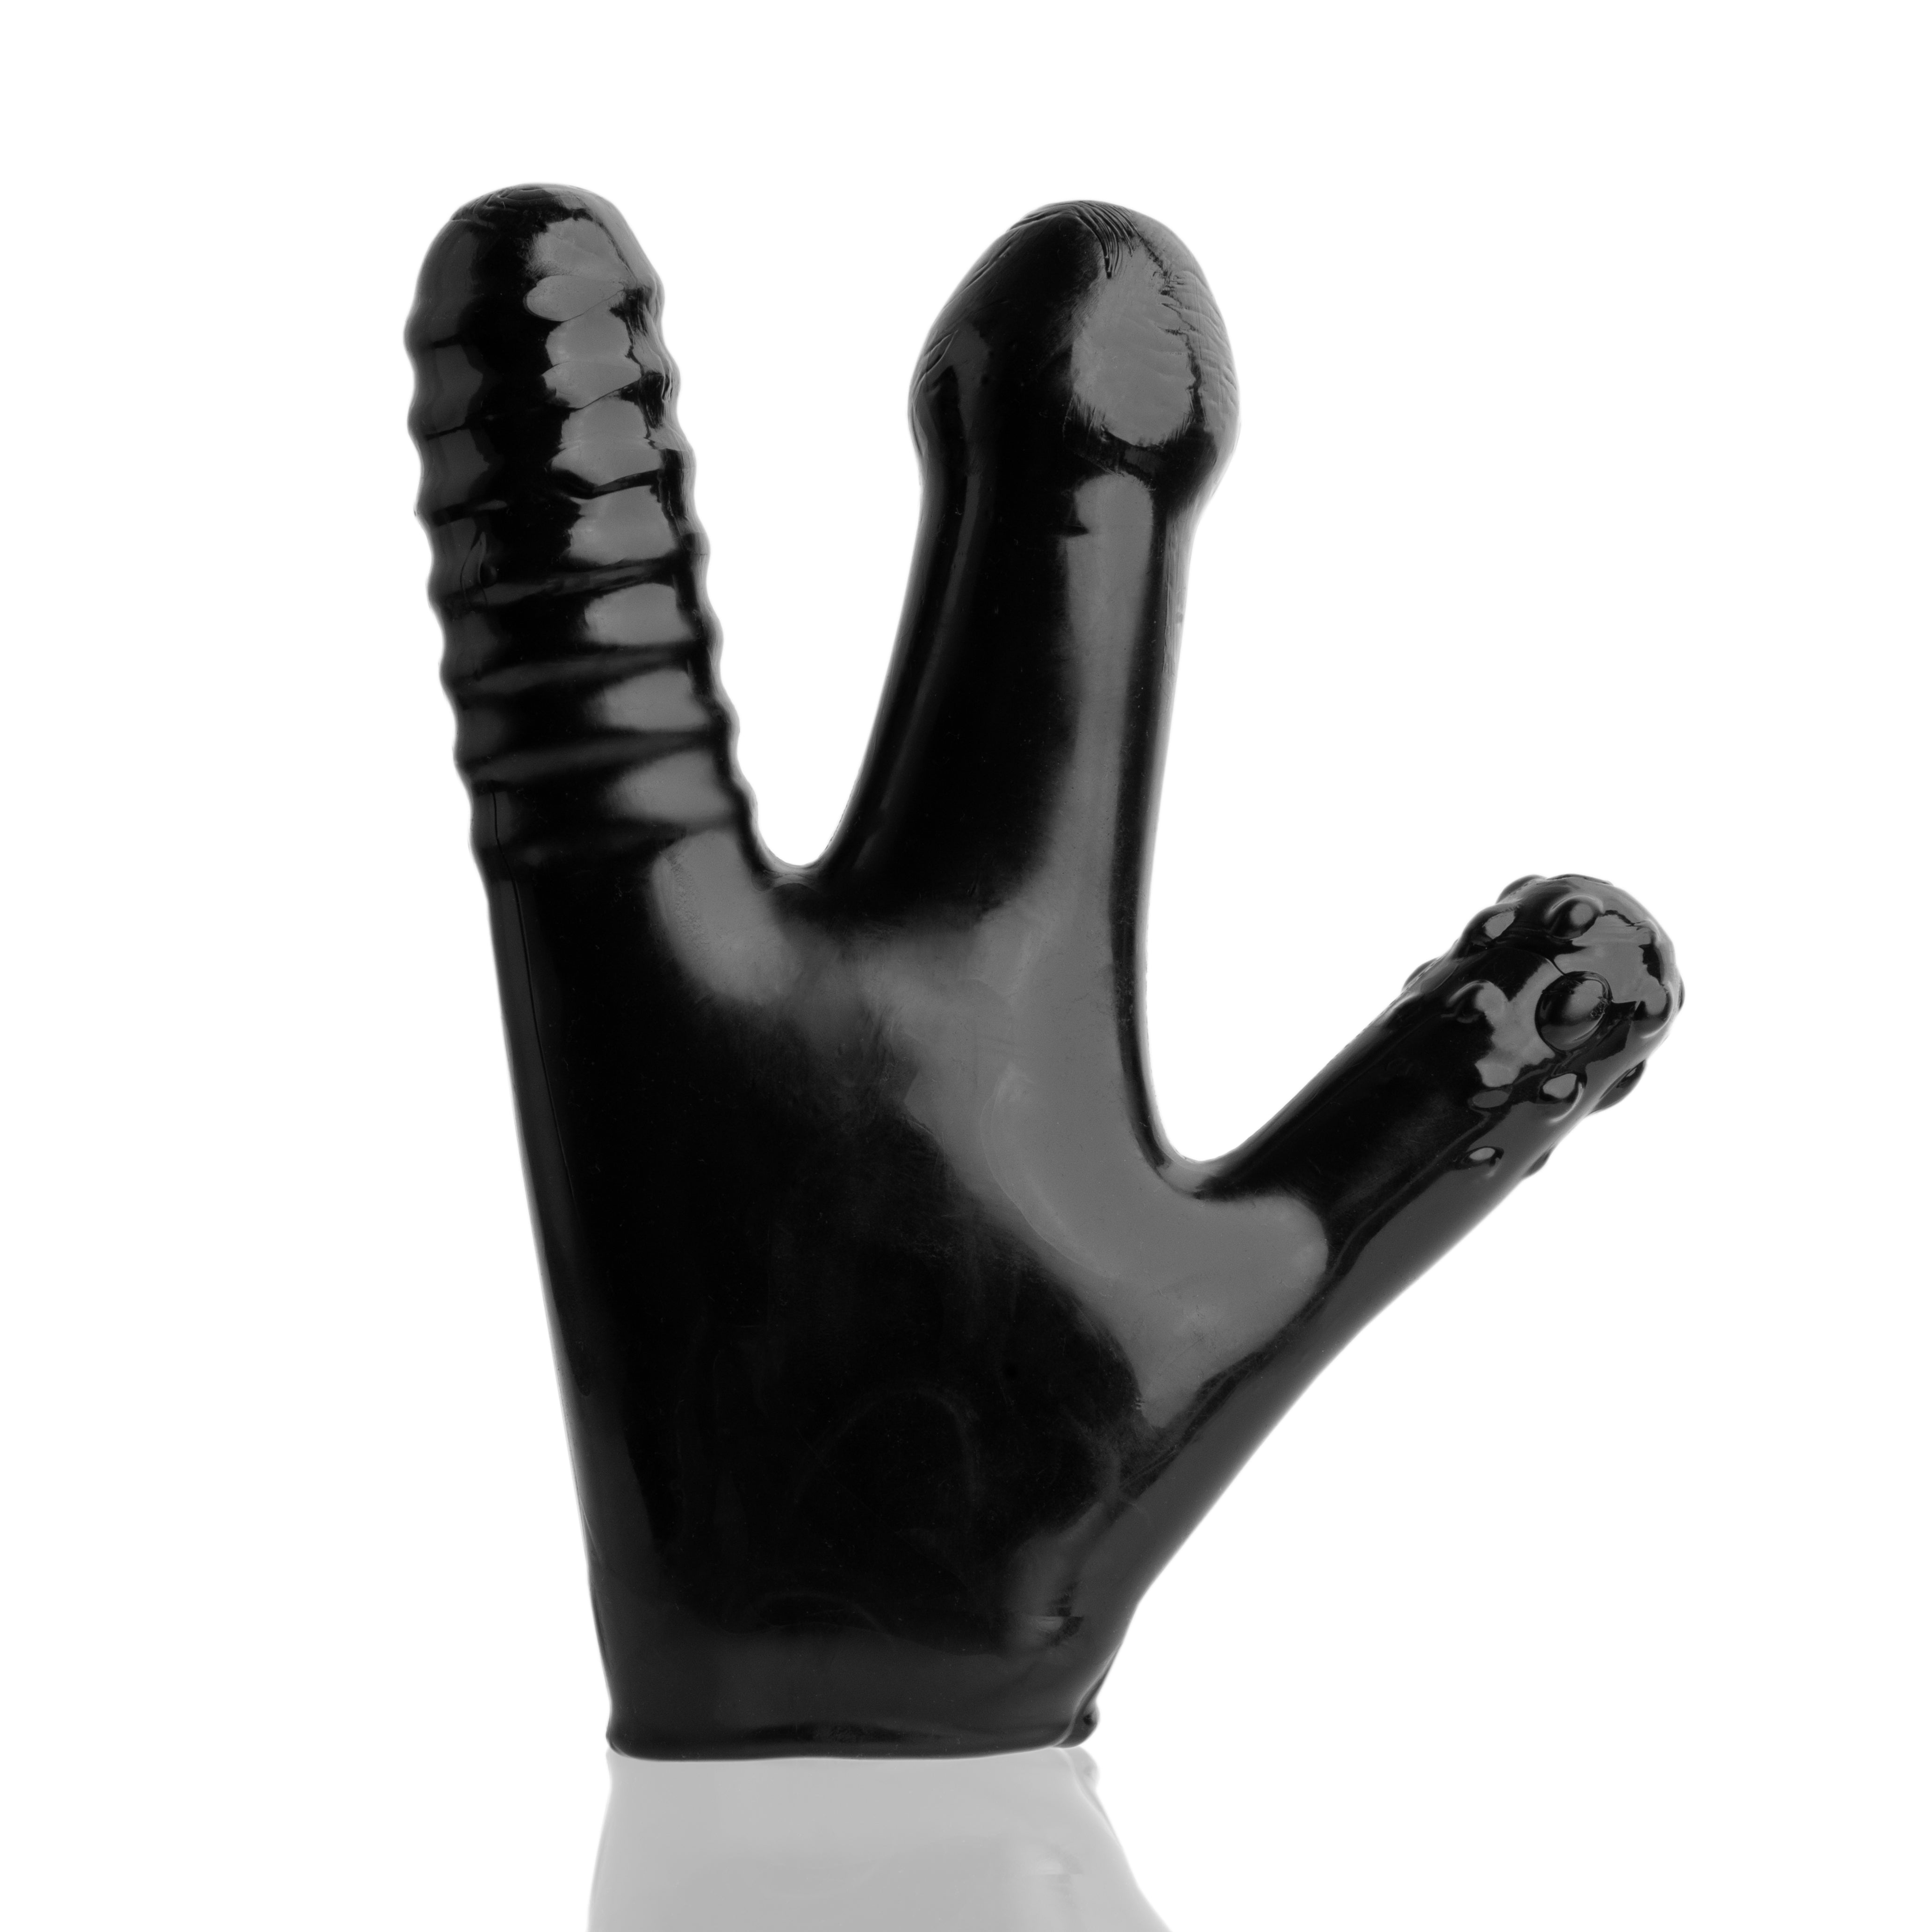 Oxballs Claw Glove